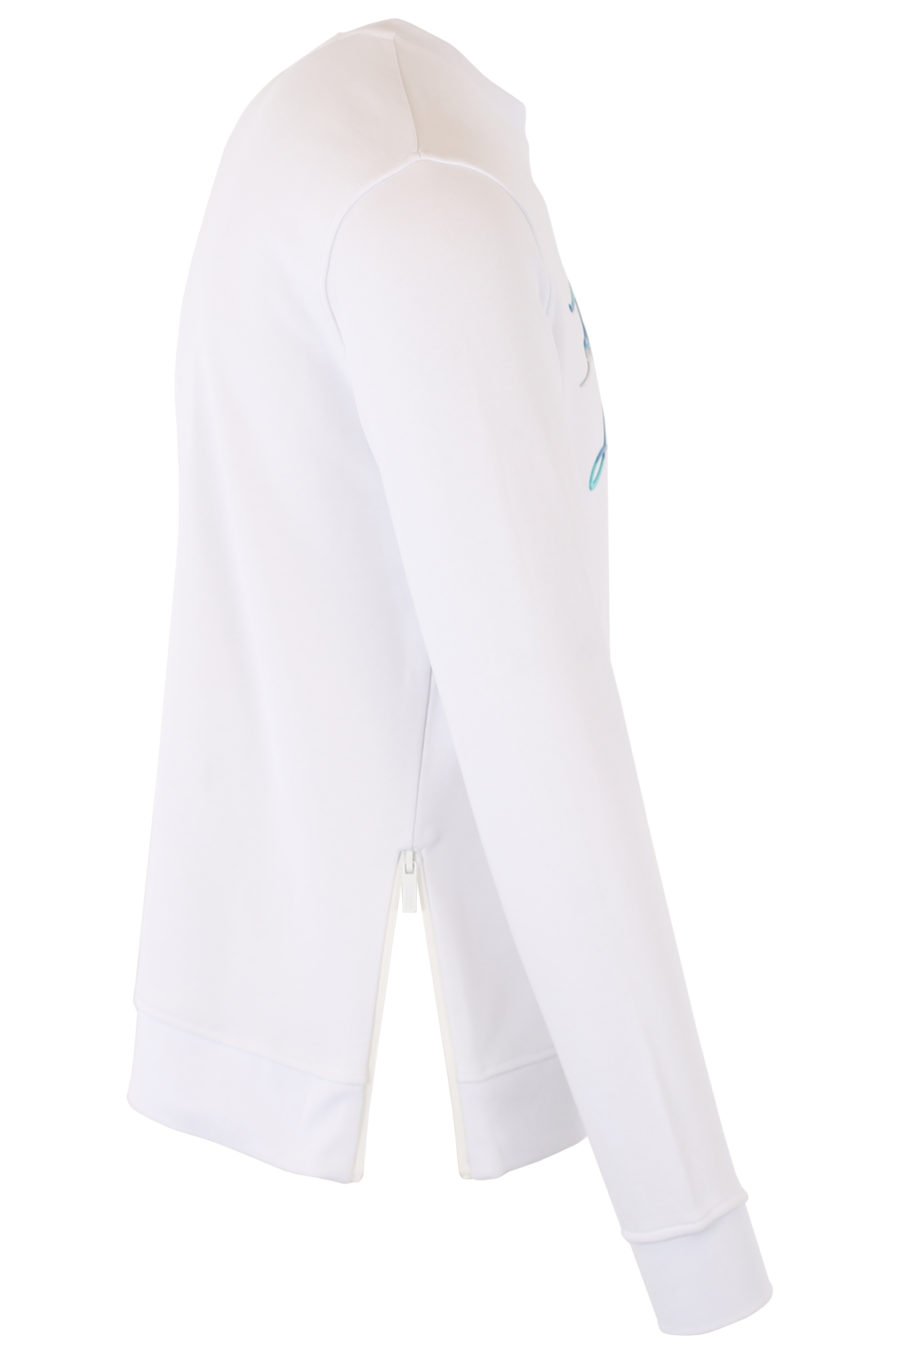 Camisola branca com logótipo multicolorido azul - IMG 1386